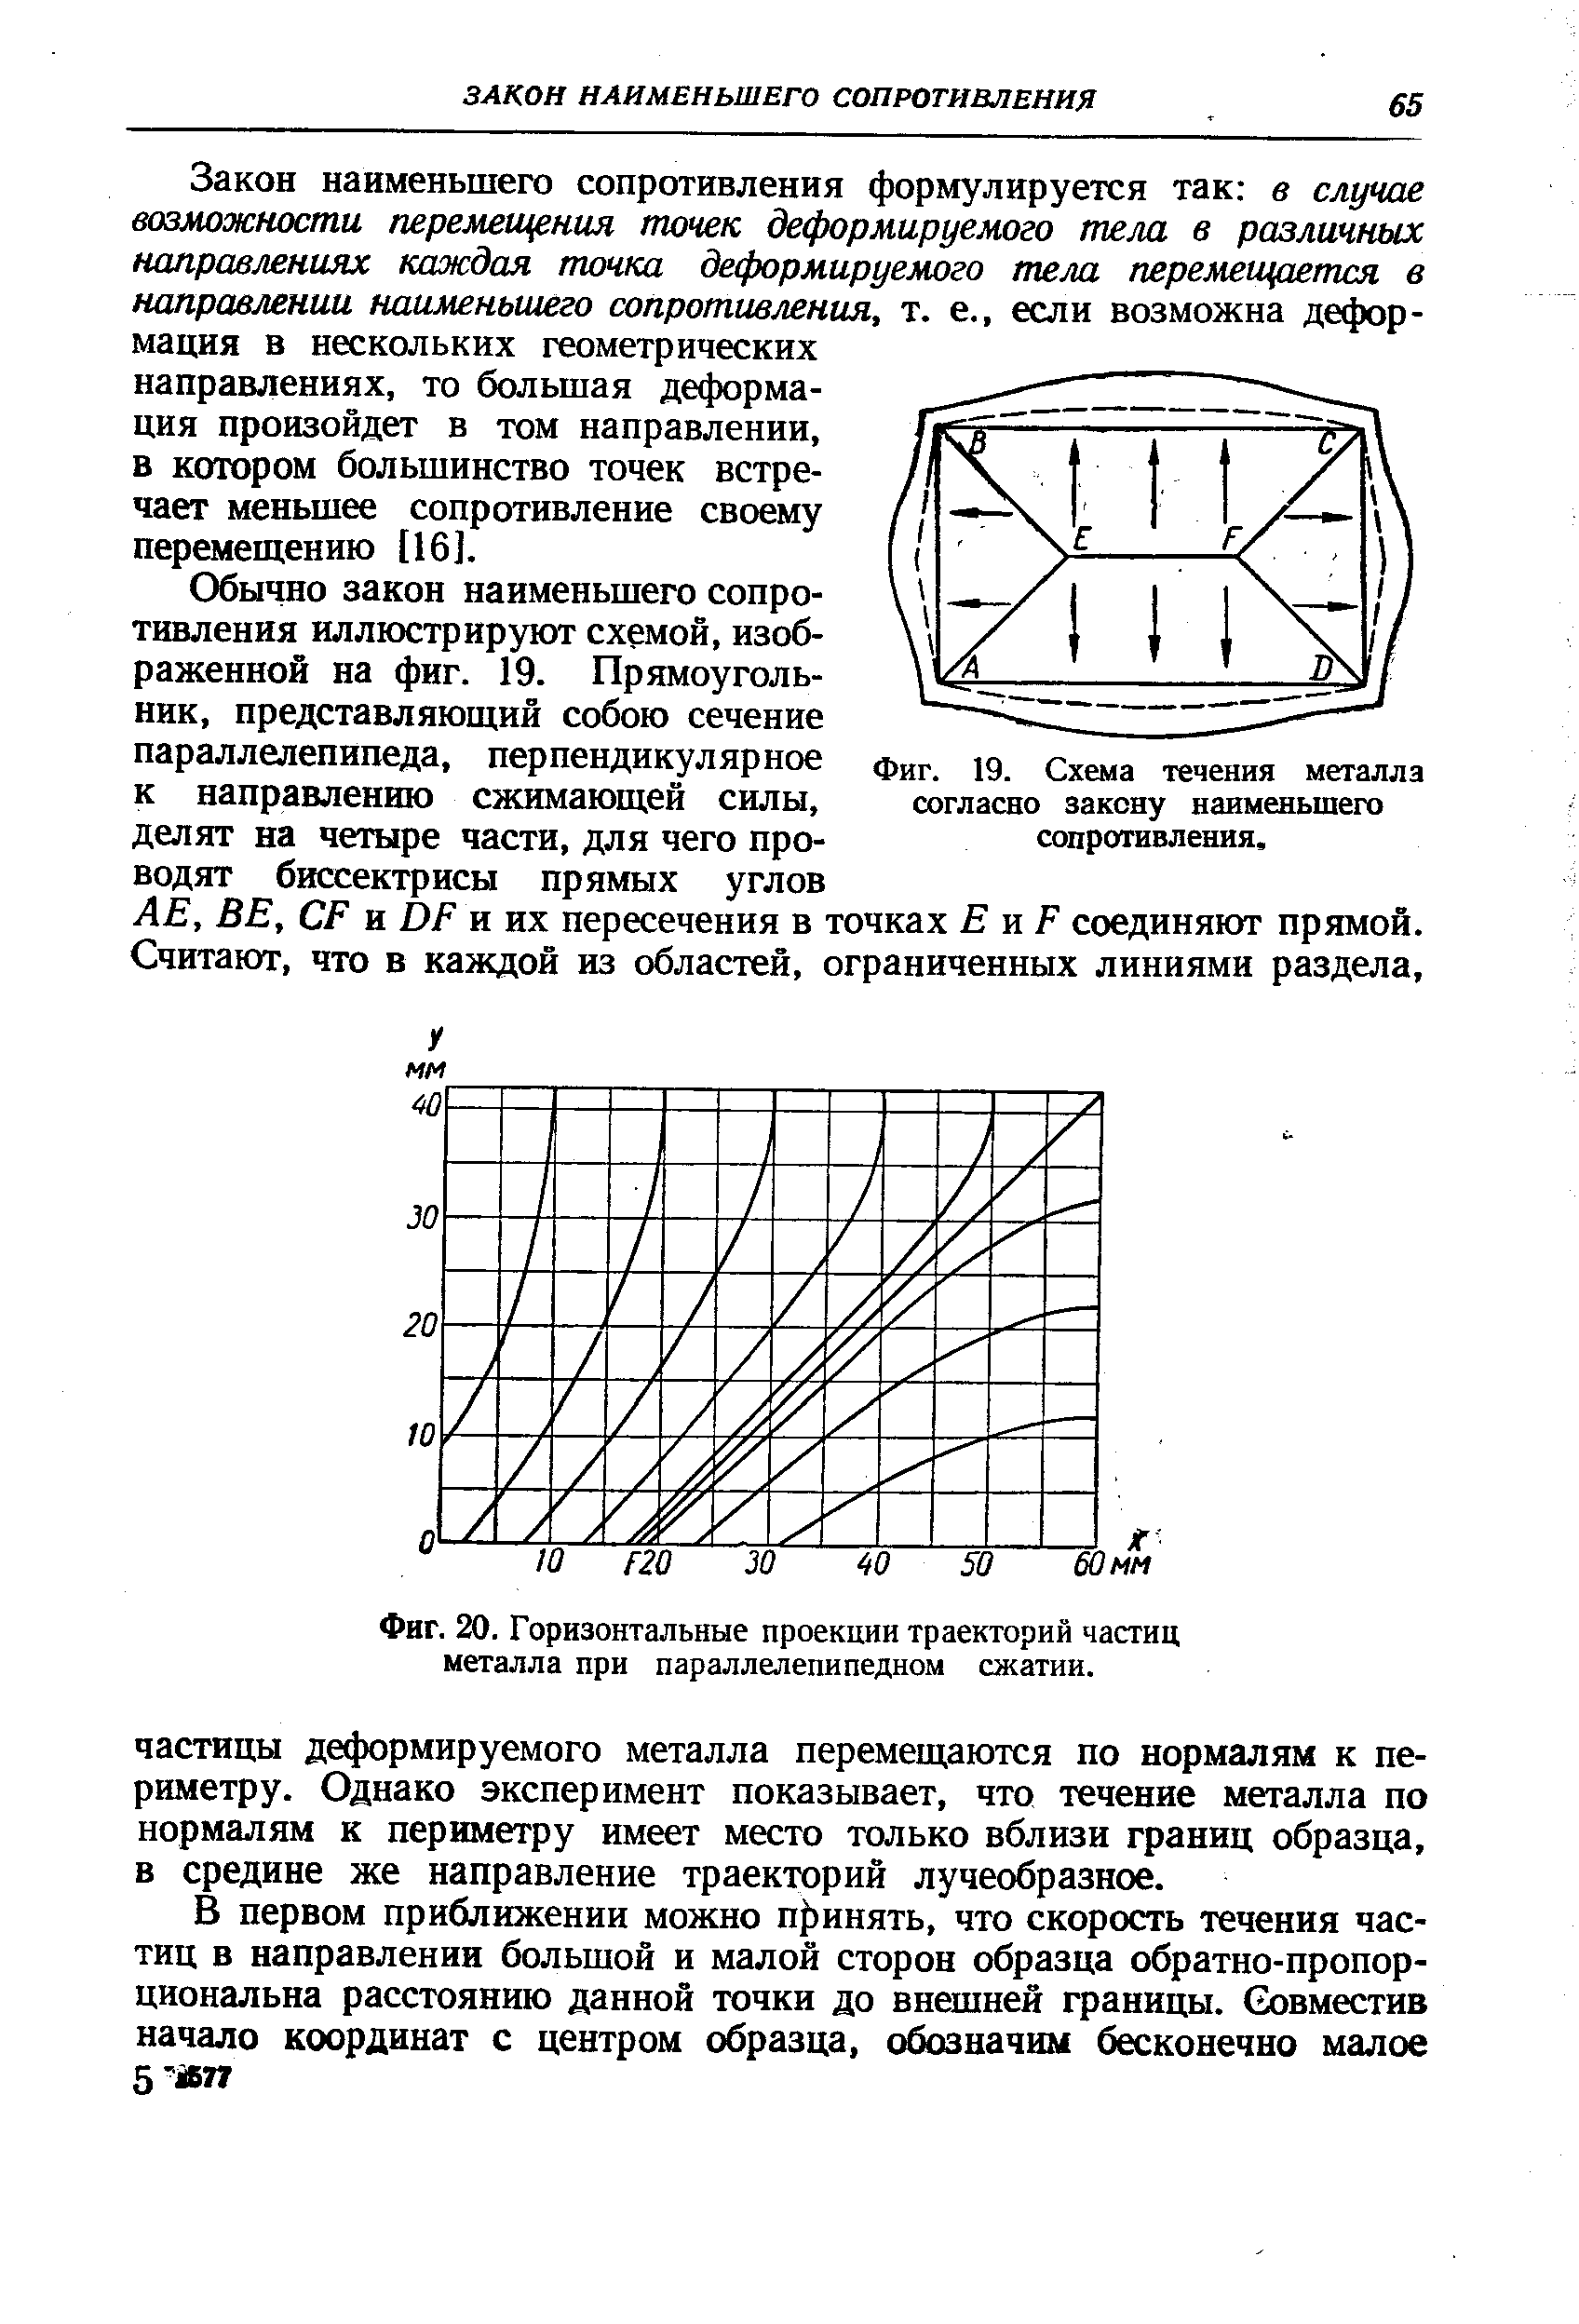 Фиг. 19. Схема течения металла согласно закону наименьшего сопротивления.
